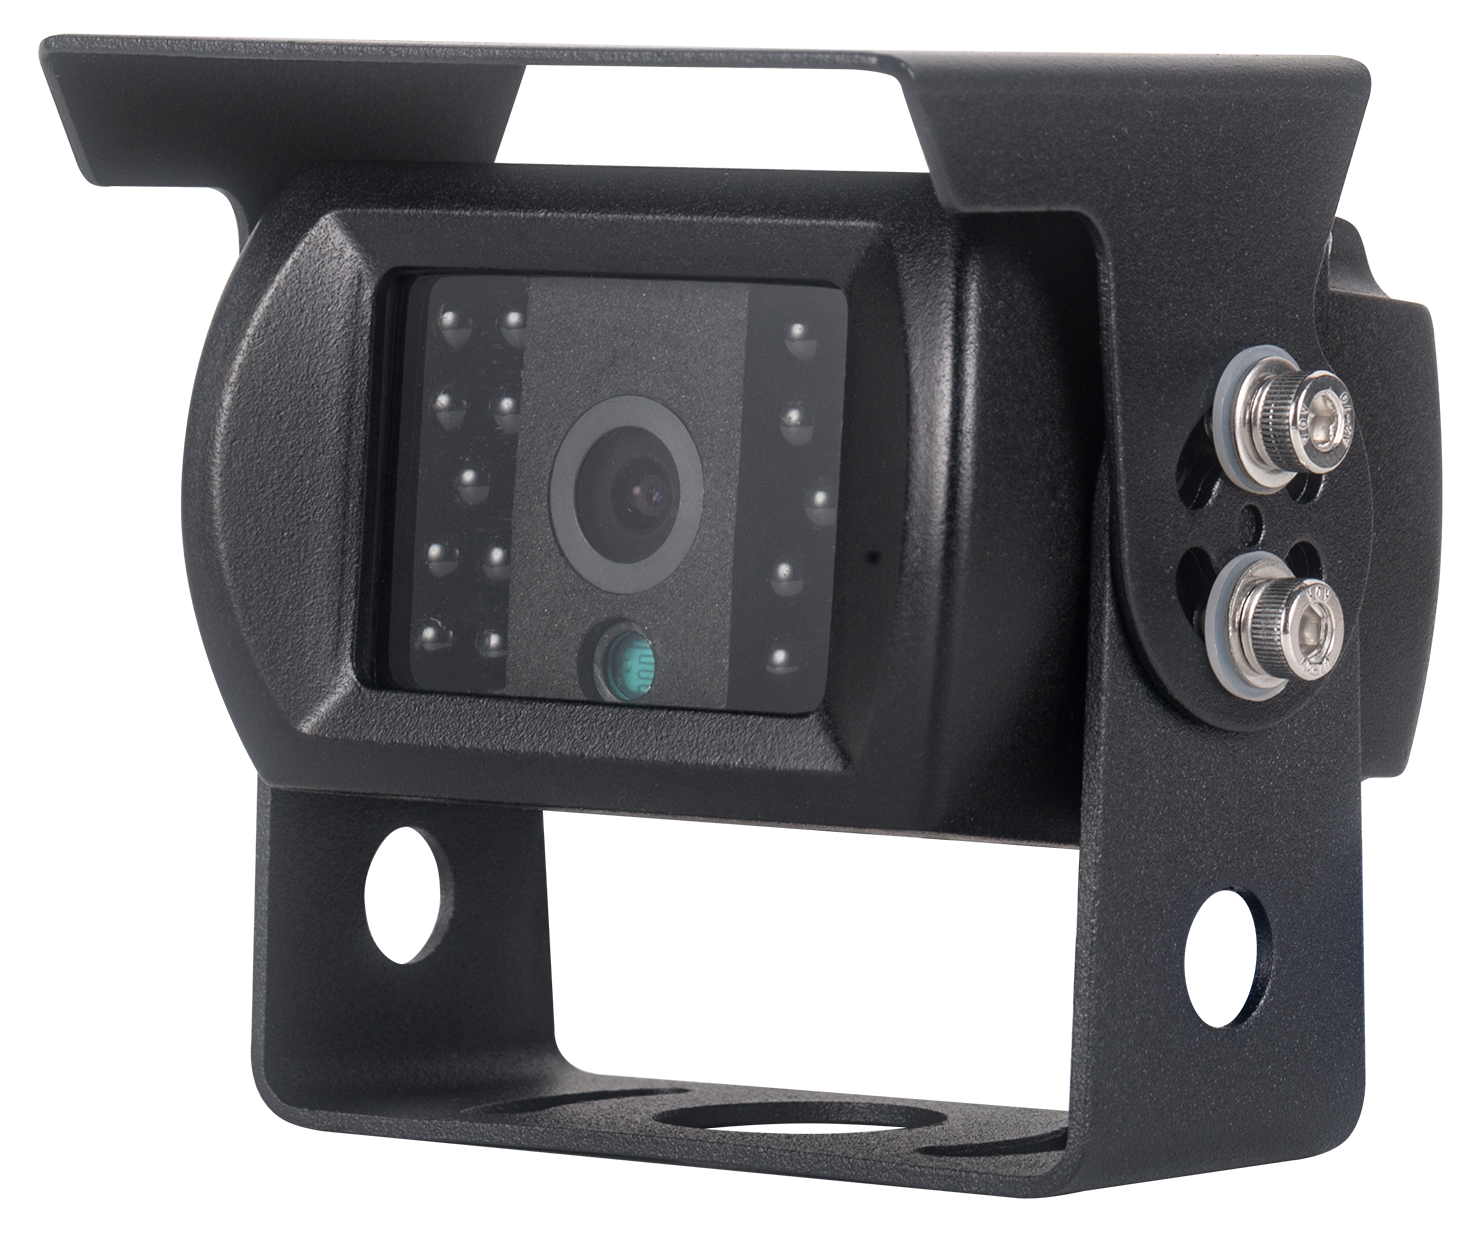 Montage caméra de recul HD 1080P sur poids lourd 4x4 -- the vadrouilleurs  for reveur -- 